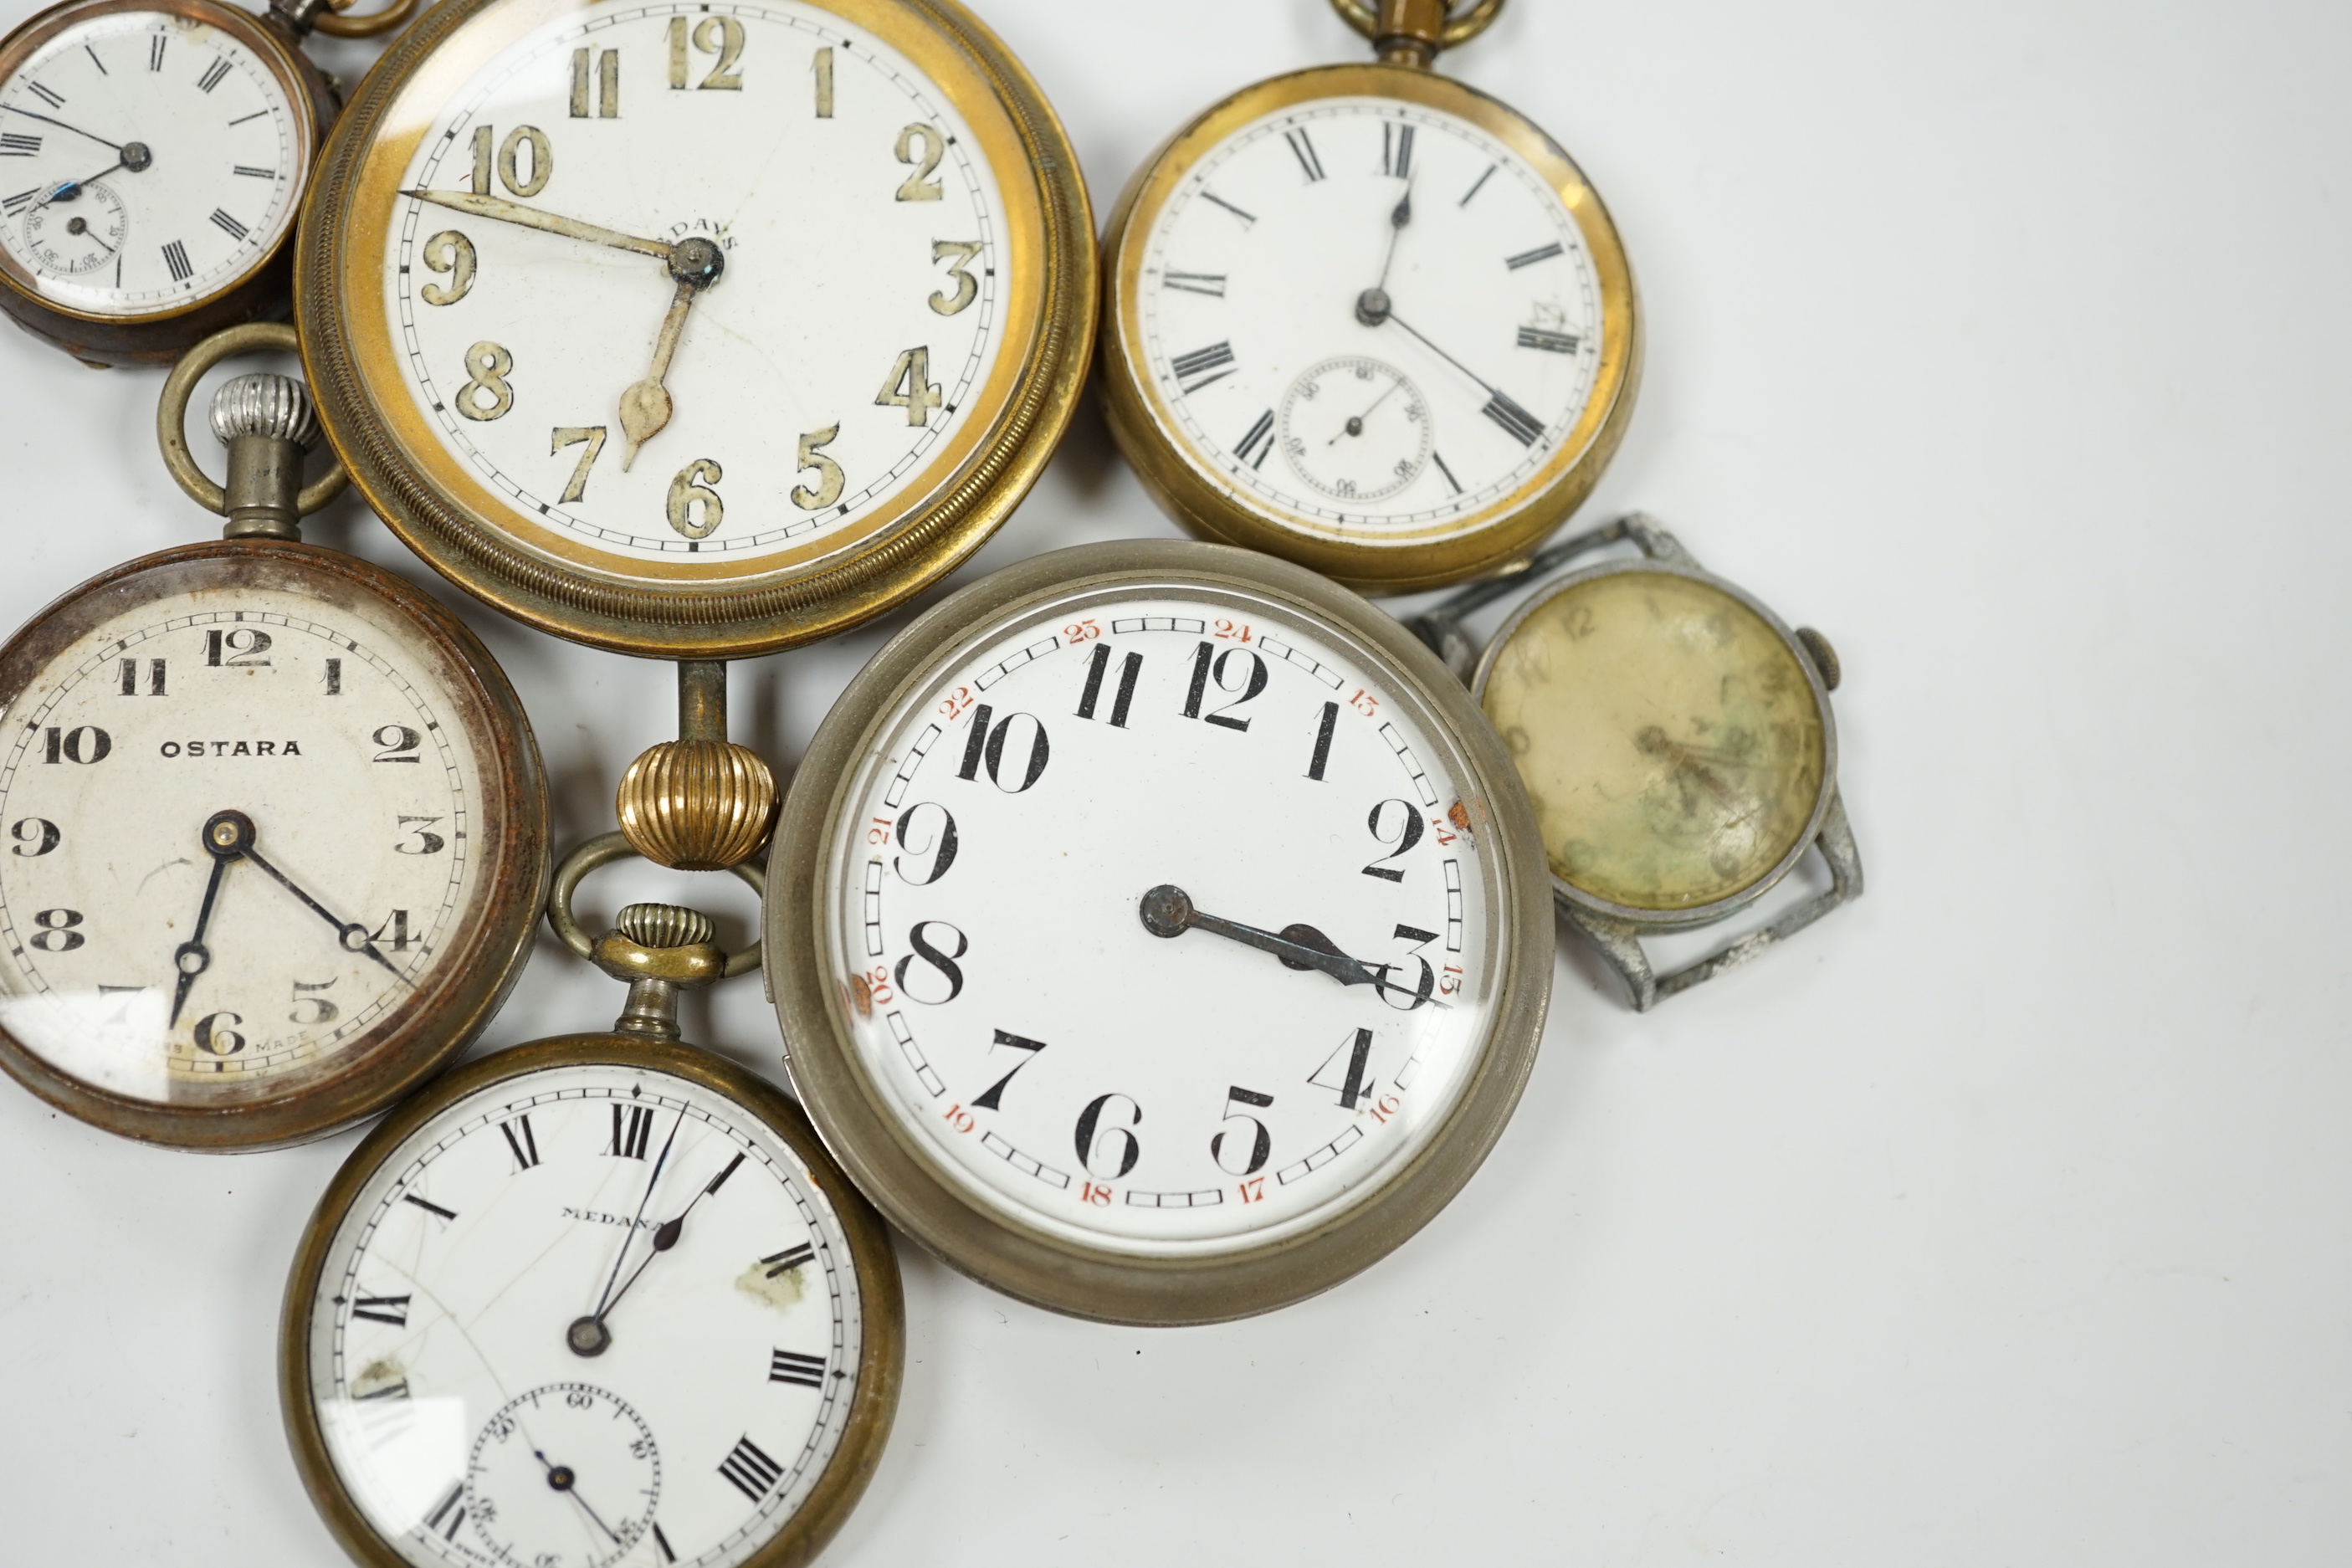 Seven assorted base metal timepieces including Ostara and Medana.